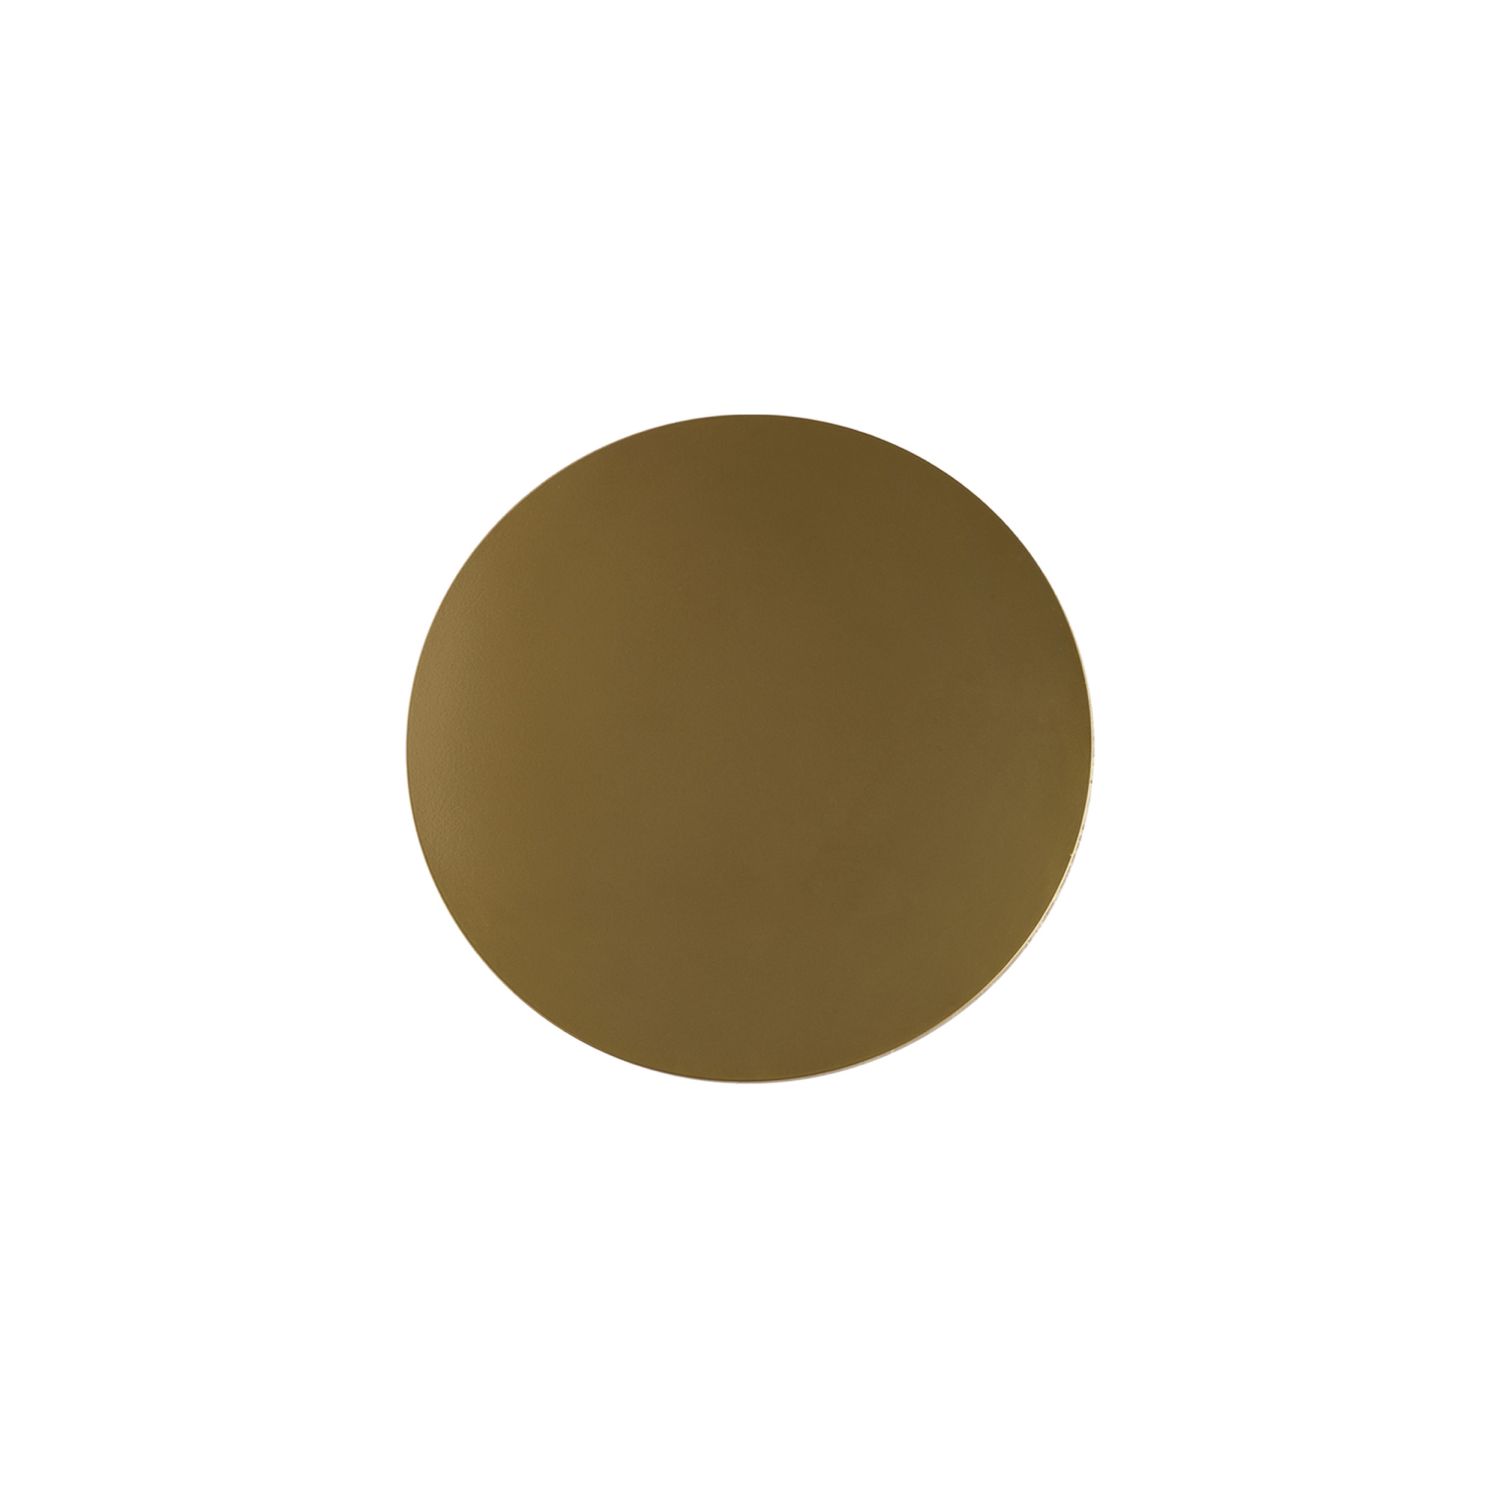 Wandleuchte Metall Ø 20 cm rund flach in Gold G9